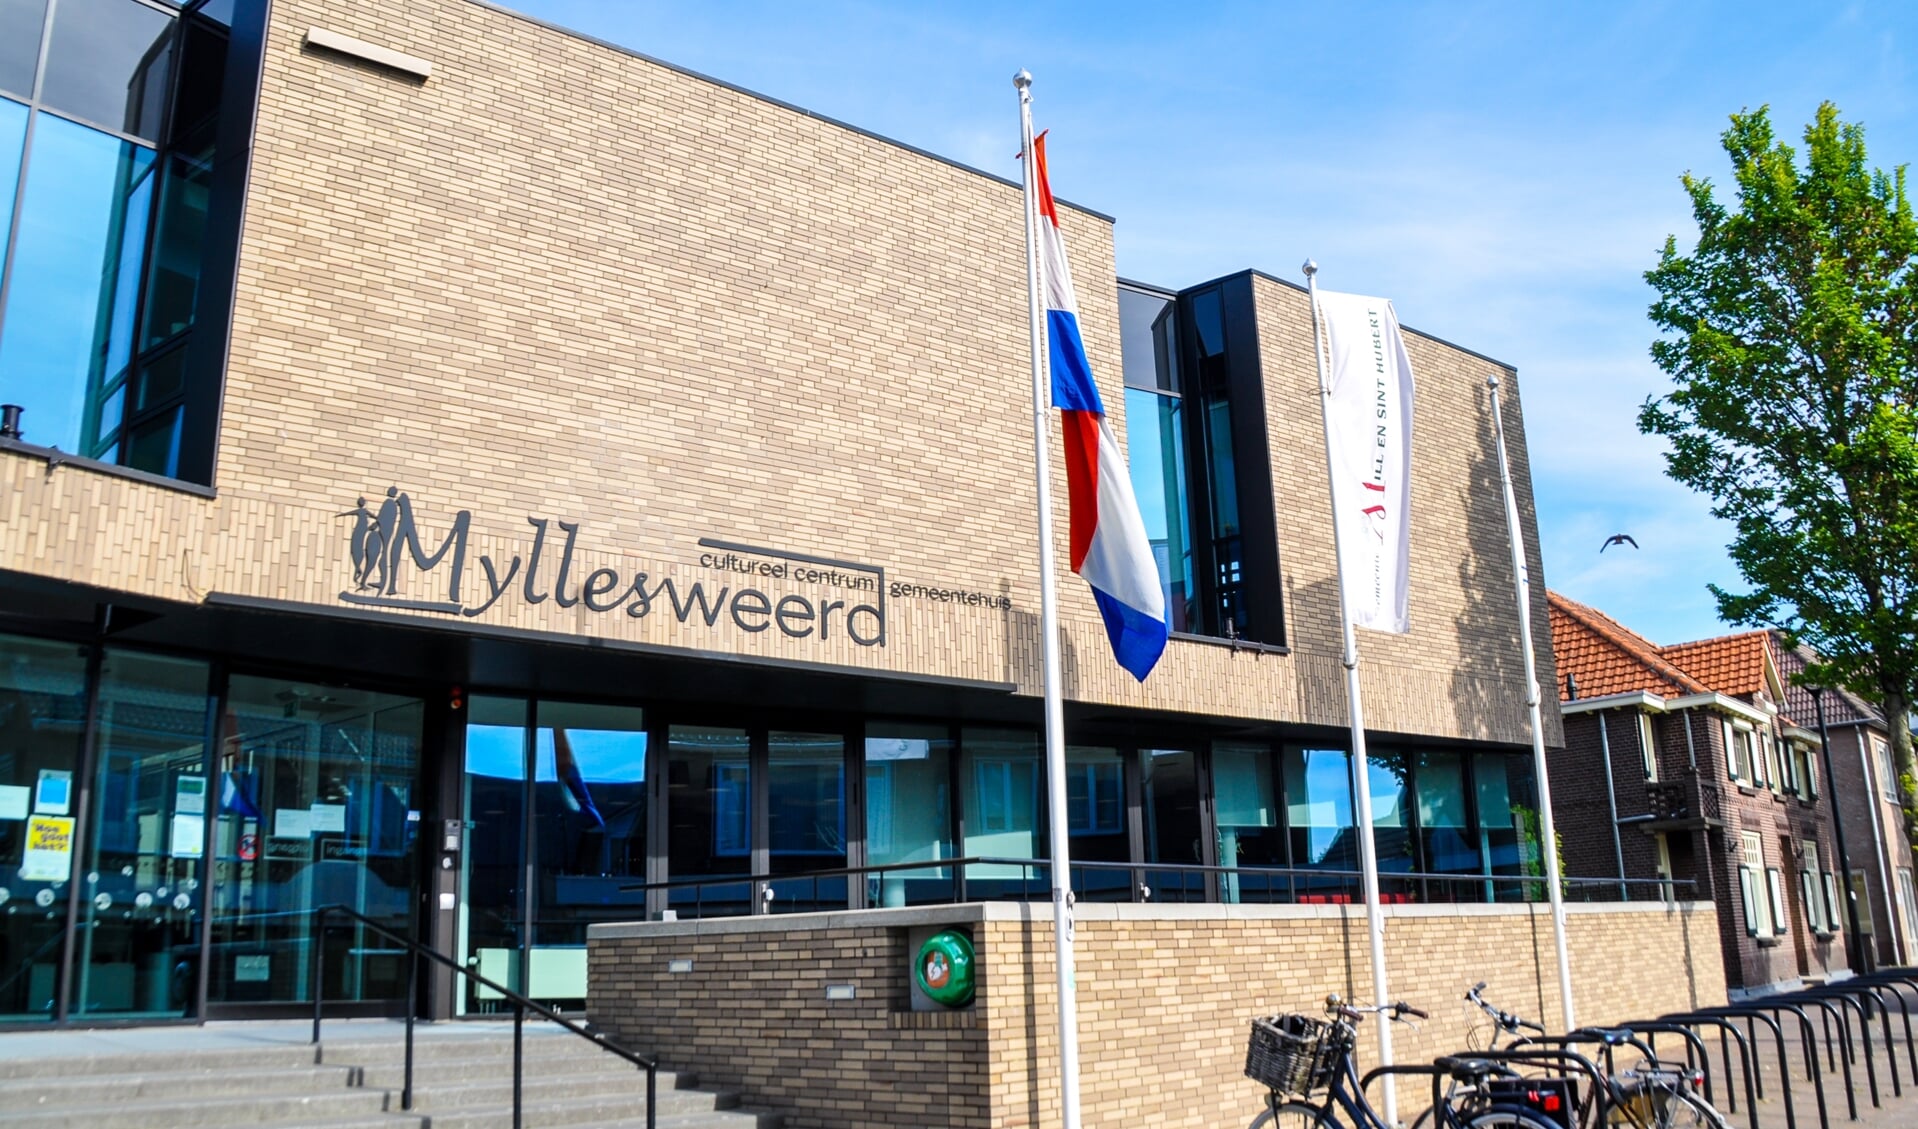 Het Millse culturele centrum Myllesweerd is op zoek naar nieuwe bestuursleden.